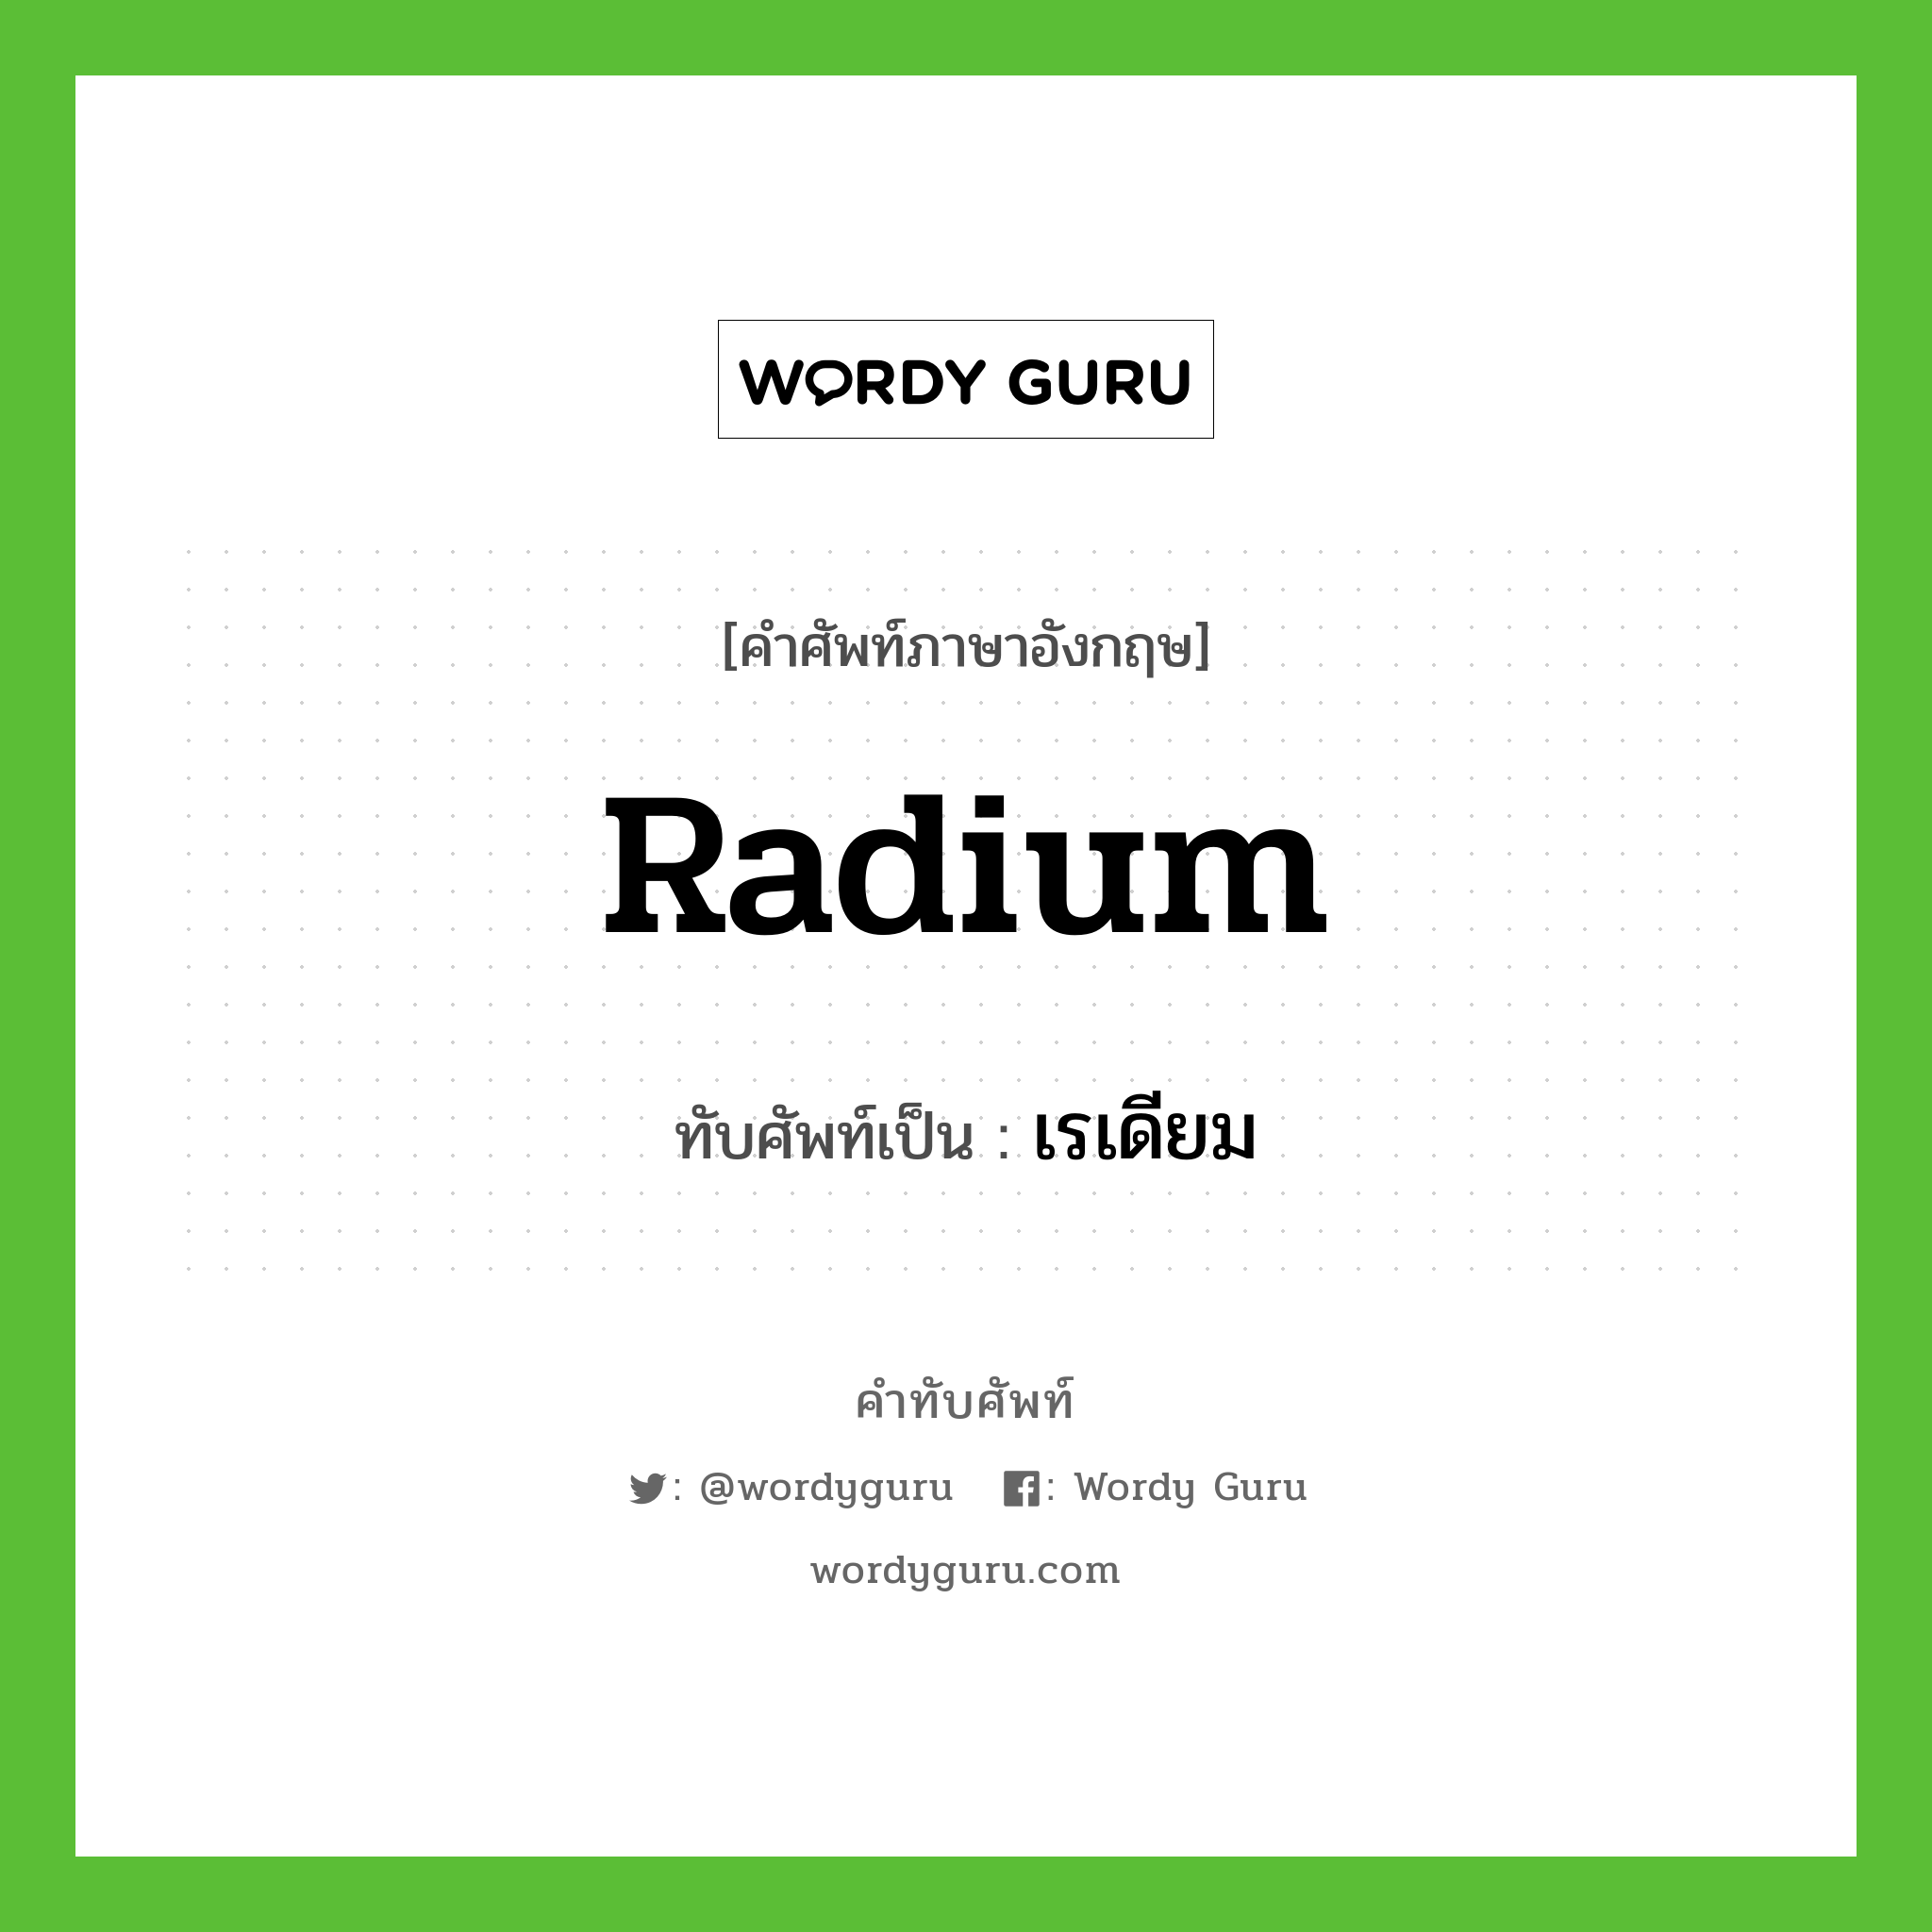 เรเดียม เขียนอย่างไร?, คำศัพท์ภาษาอังกฤษ เรเดียม ทับศัพท์เป็น radium